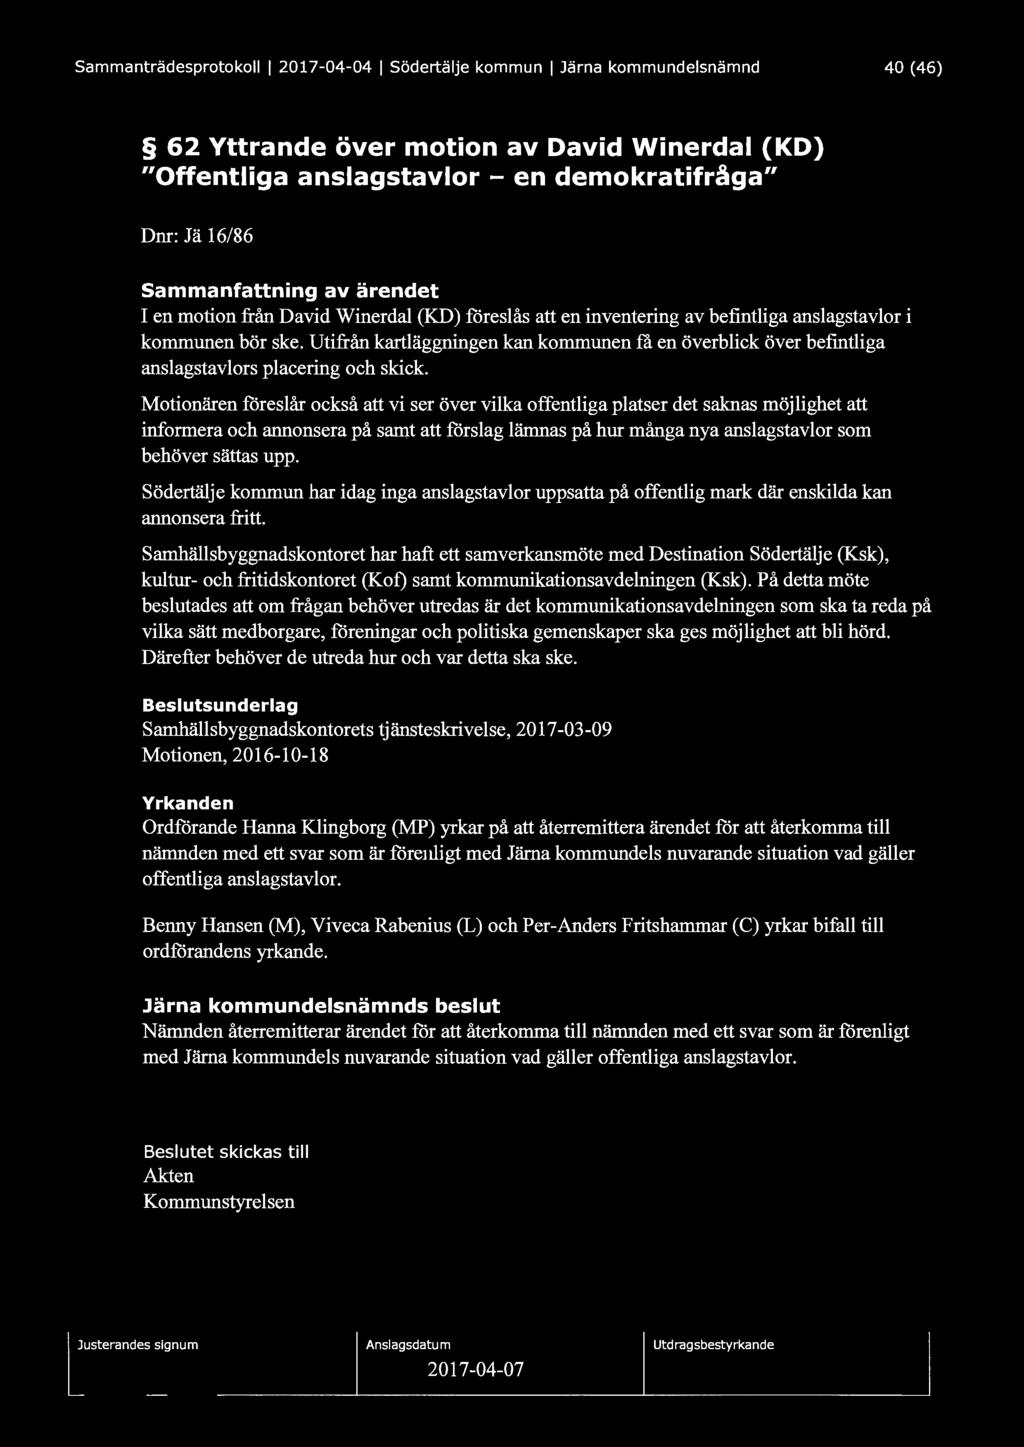 Sammanträdesprotokoll l 2017-04-04 l Södertälje kommun l Järna kommundelsnämnd 40 (46) 62 Yttrande över motion av David Winerdal (KD) "Offentliga anslagstavlor - en demokratifråga" Dm: Jä 16/86